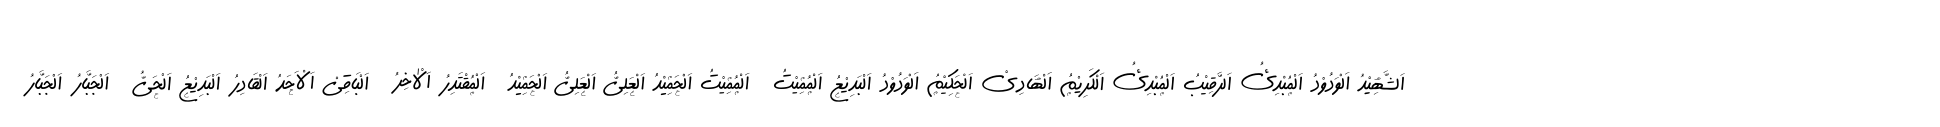 99 Names of ALLAH Handwriting